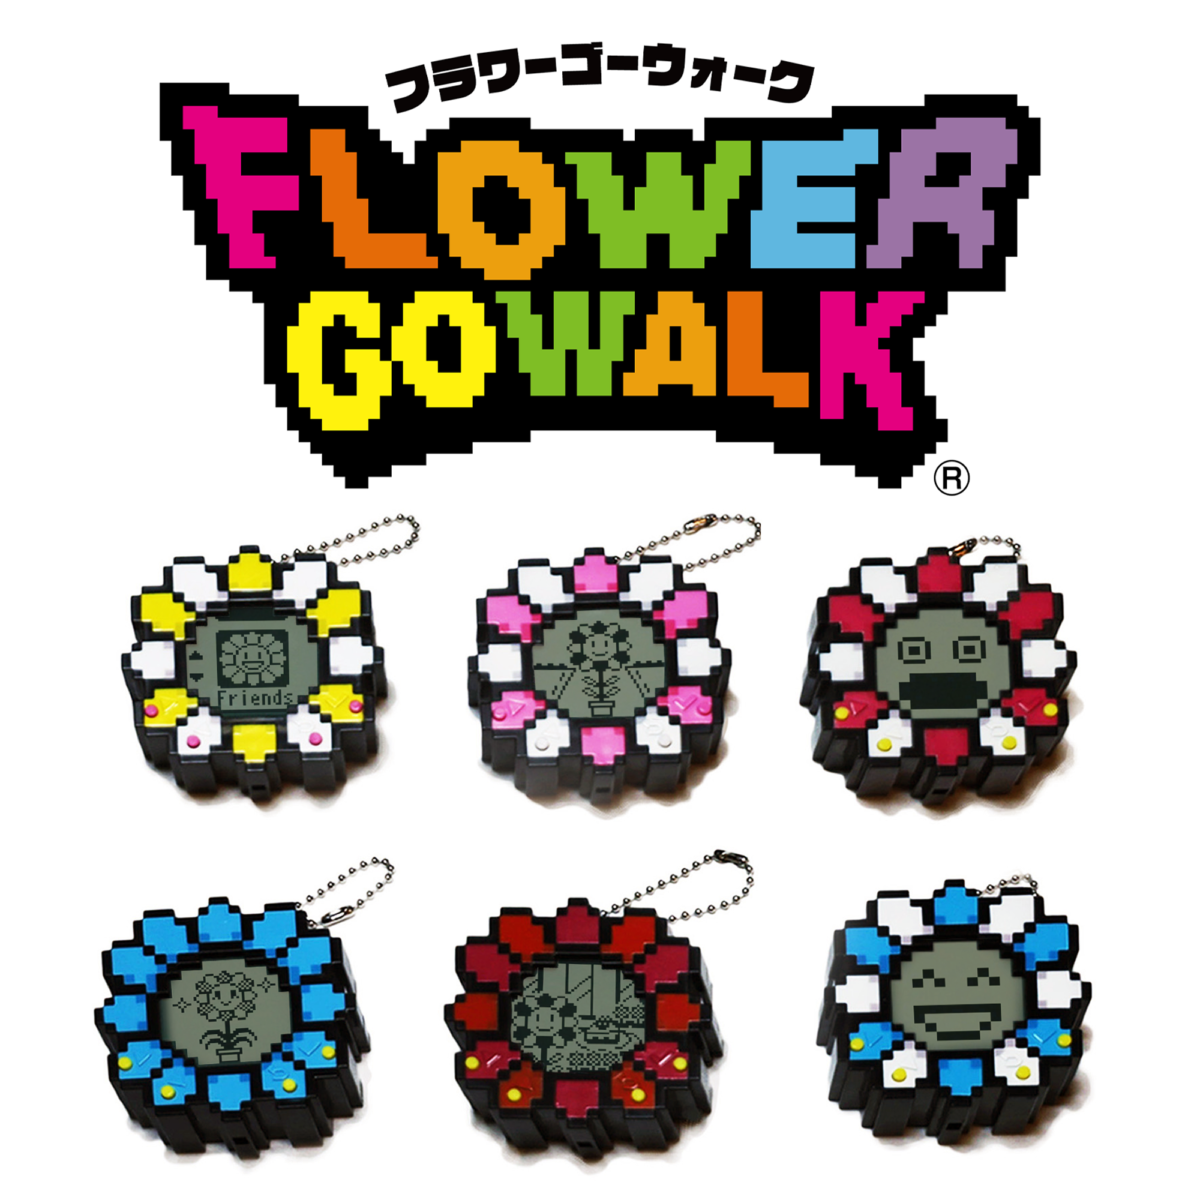 Takashi Murakami / kaikai kiki】新作ゲーム「Flower Go Walk」が12月